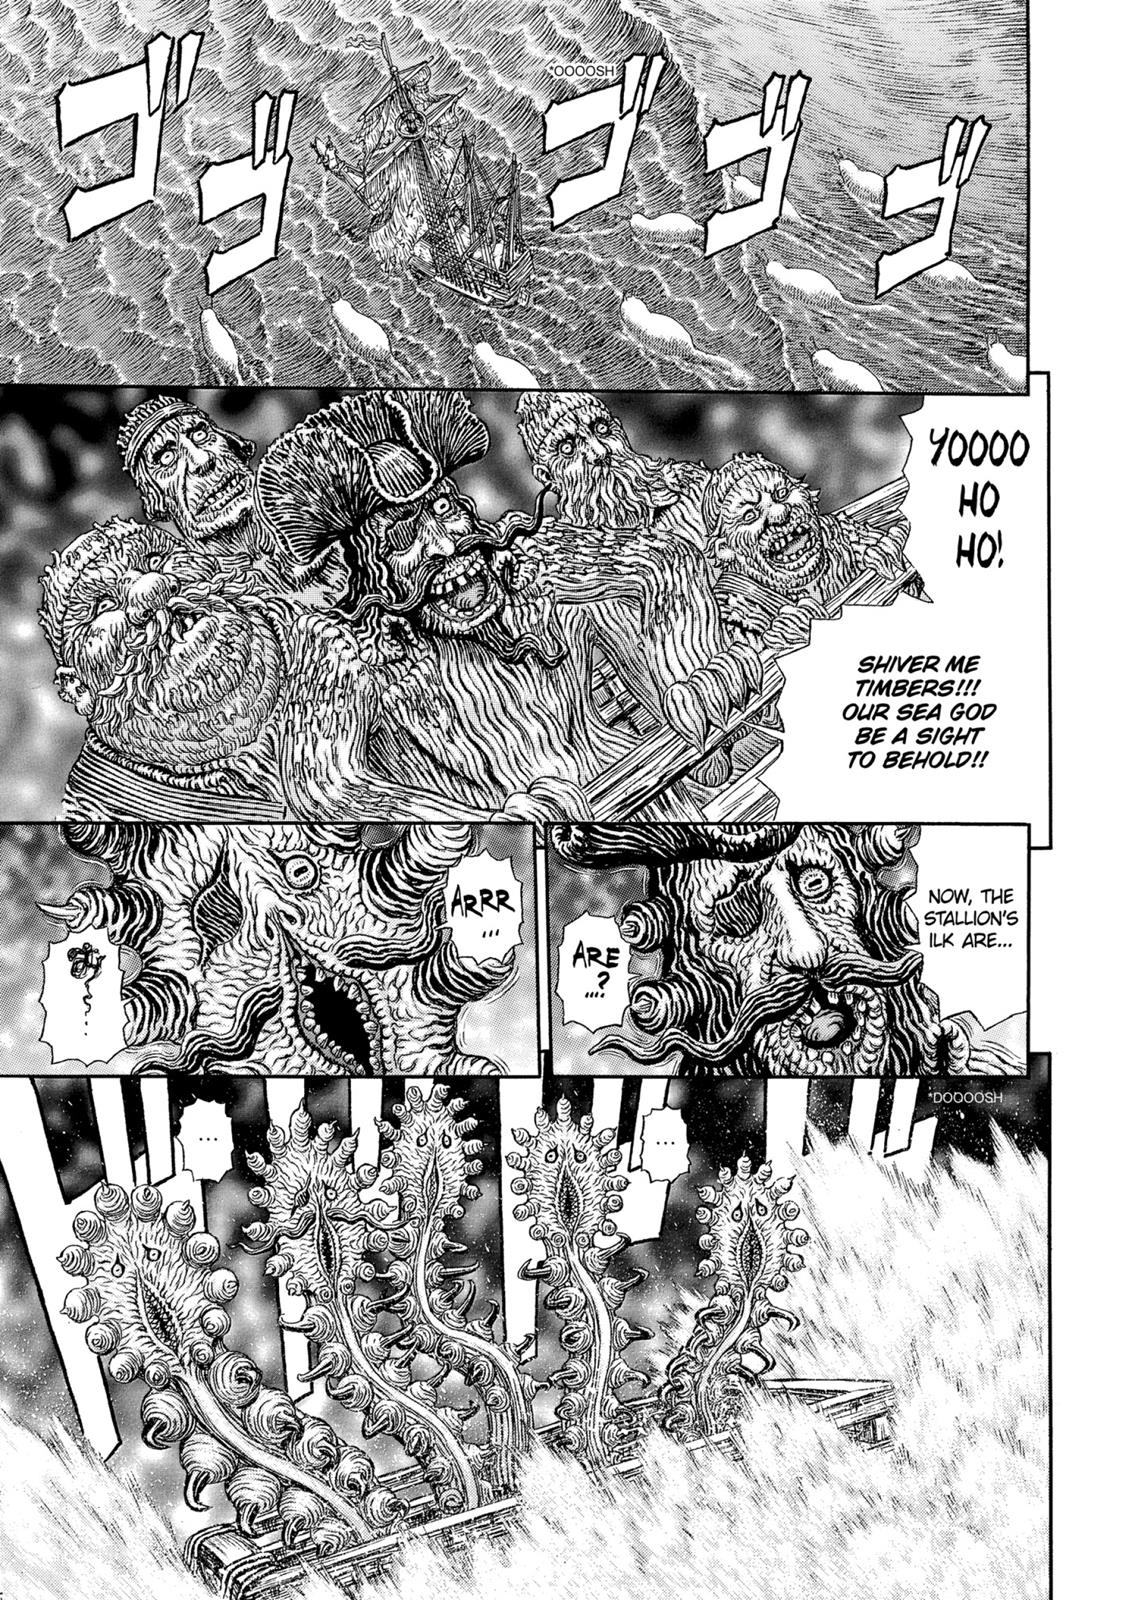 Berserk Manga Chapter 323 image 02